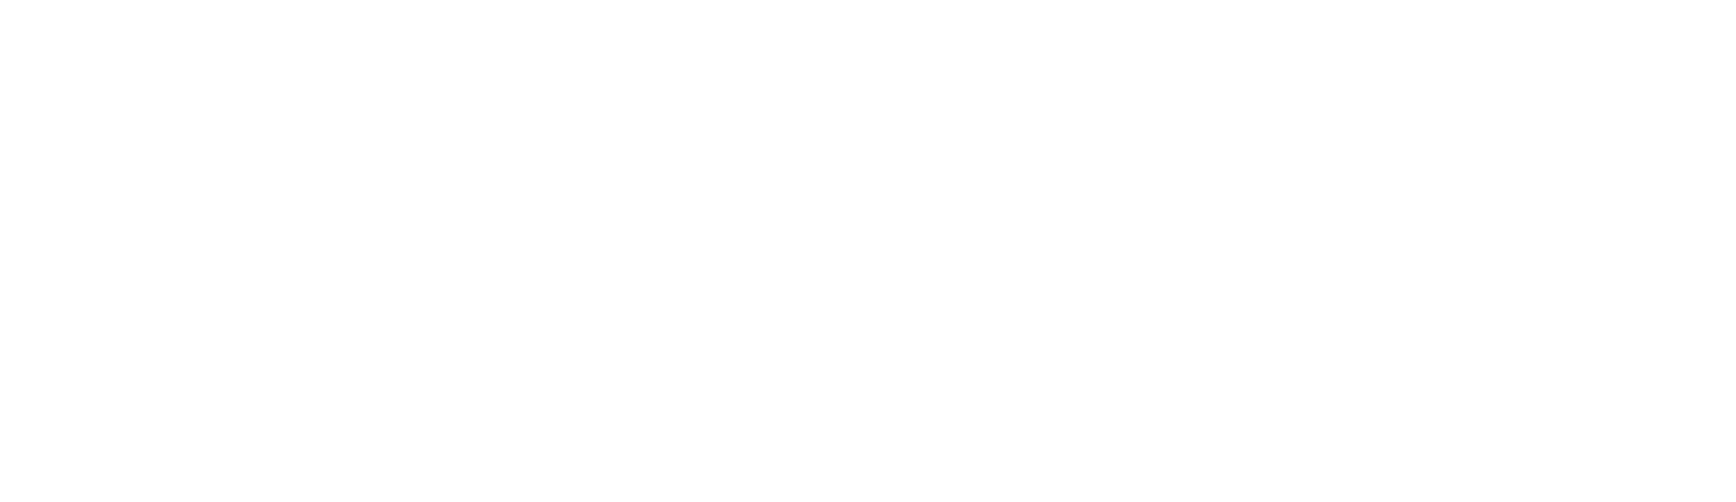 Artec3D client logo, white